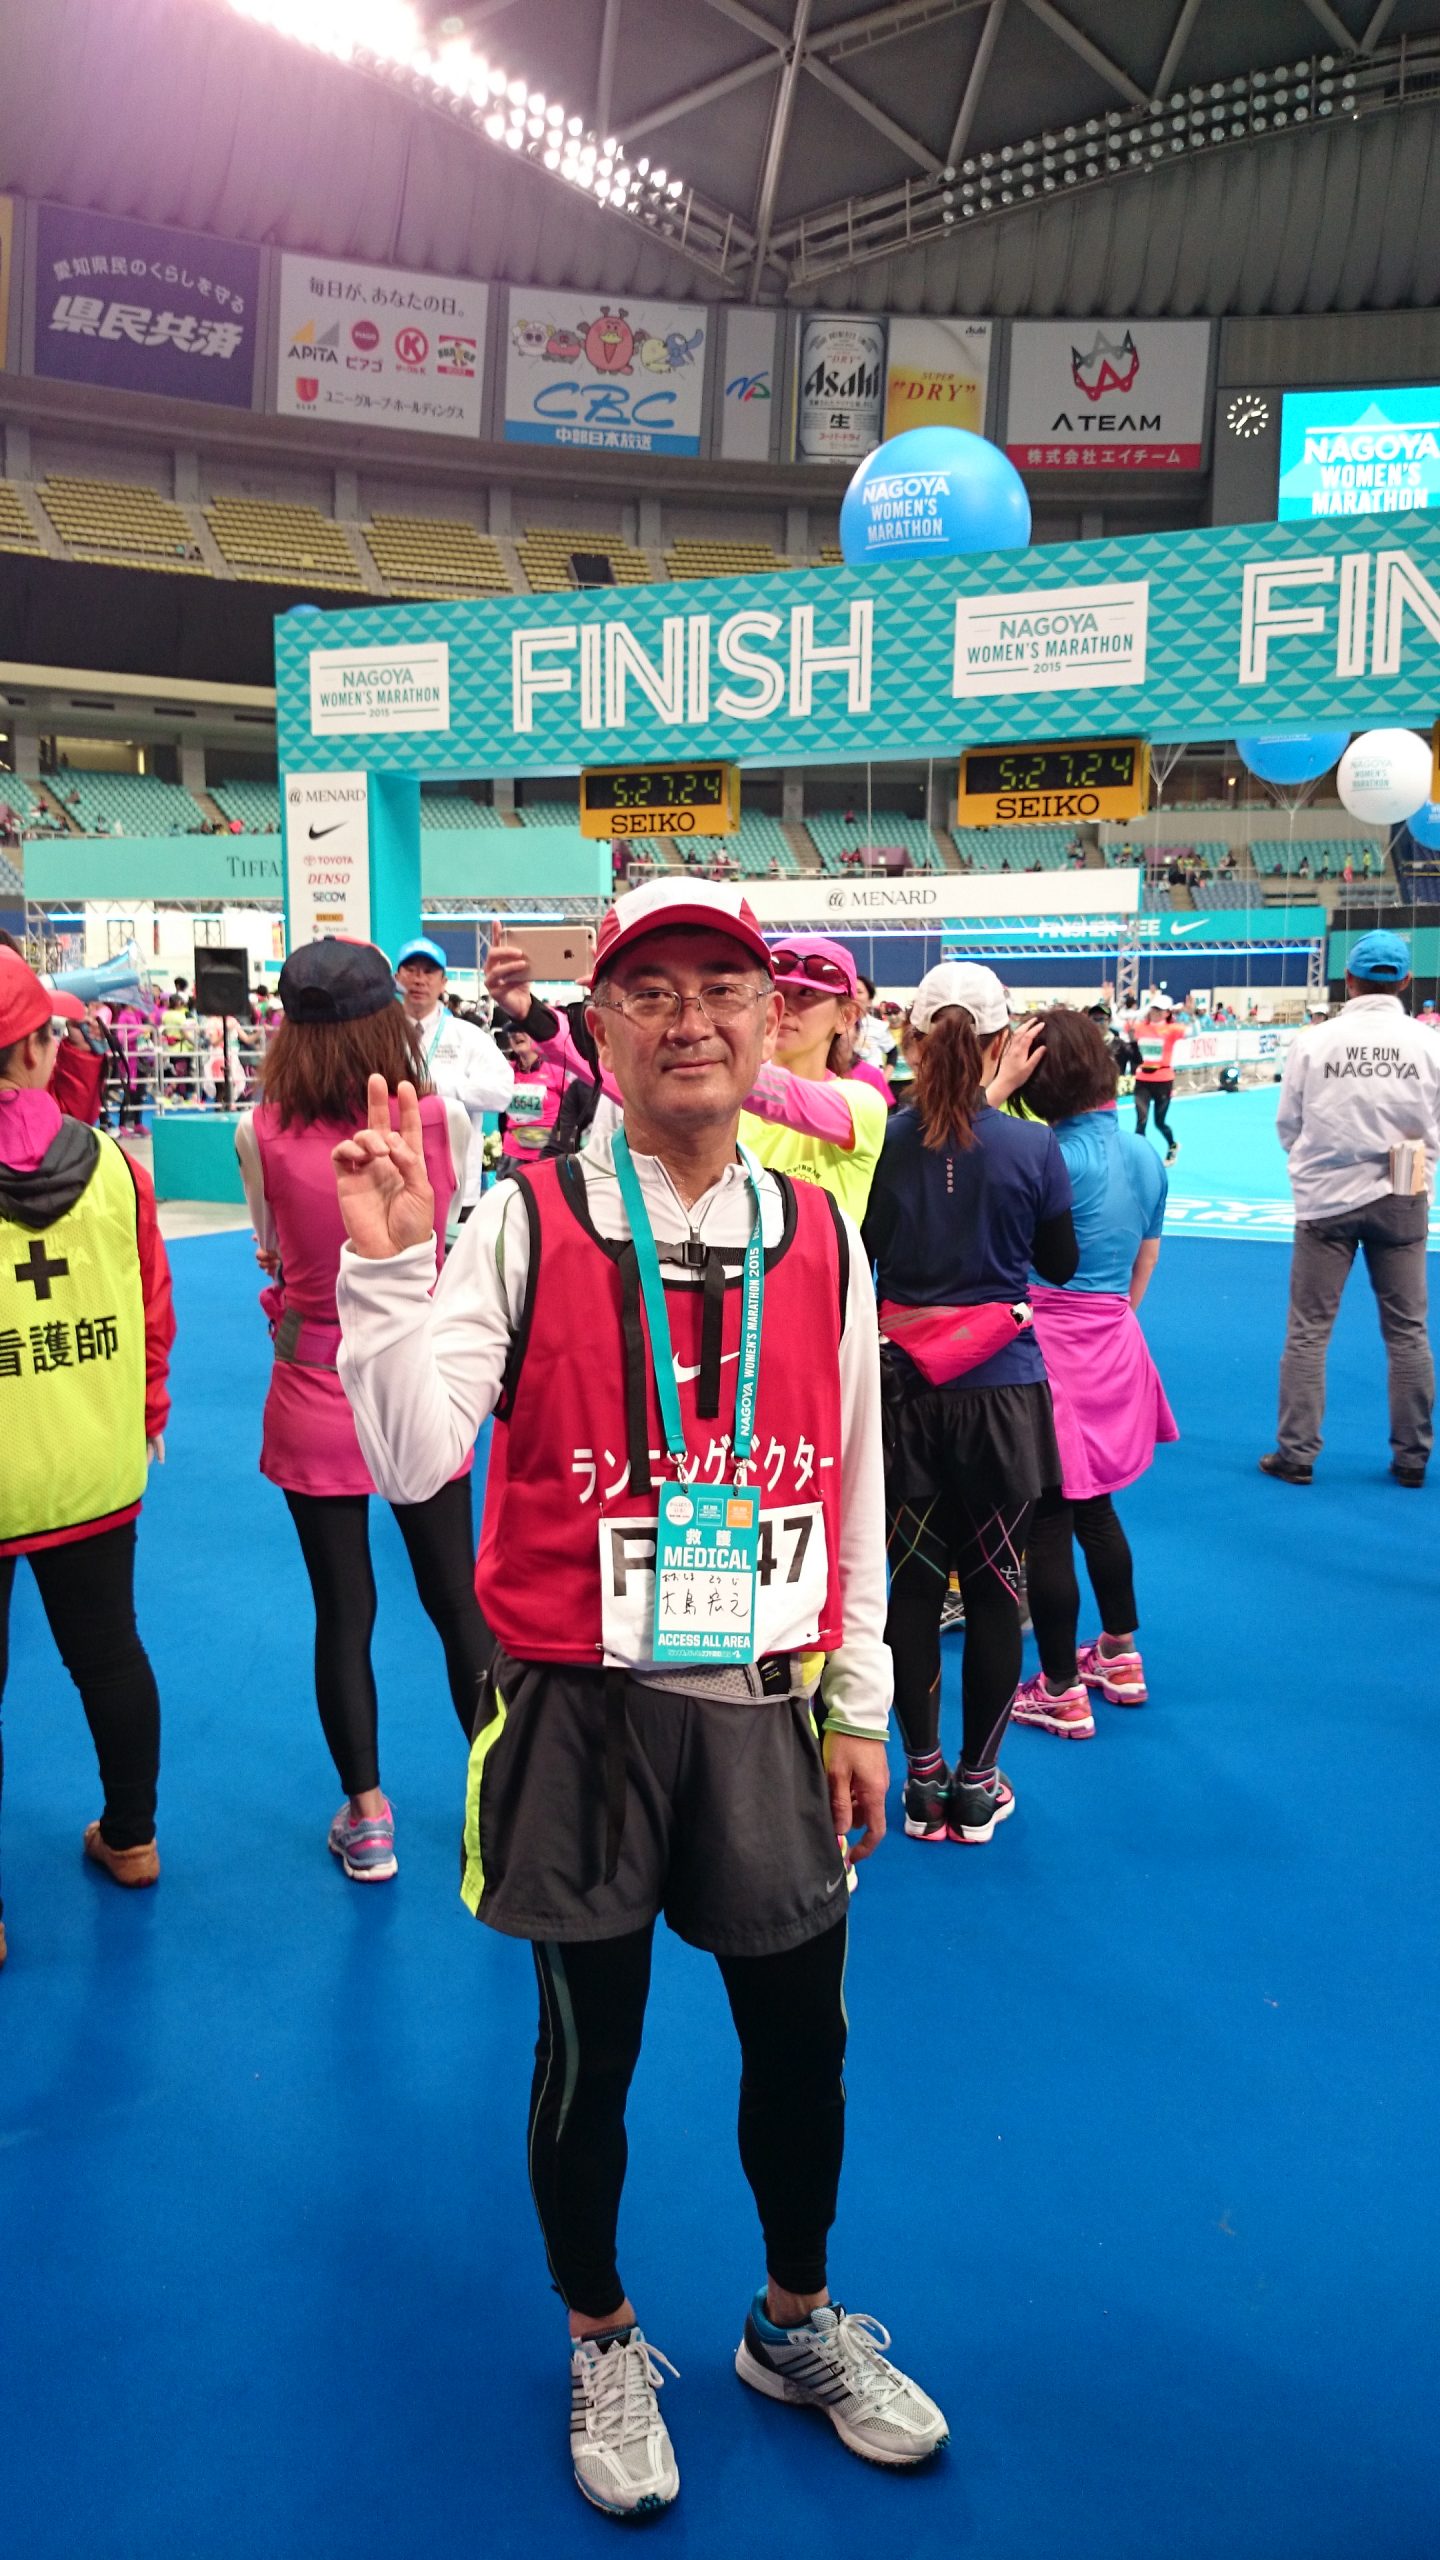 2015名古屋ウィメンズマラソンでランニングドクターを務めました。